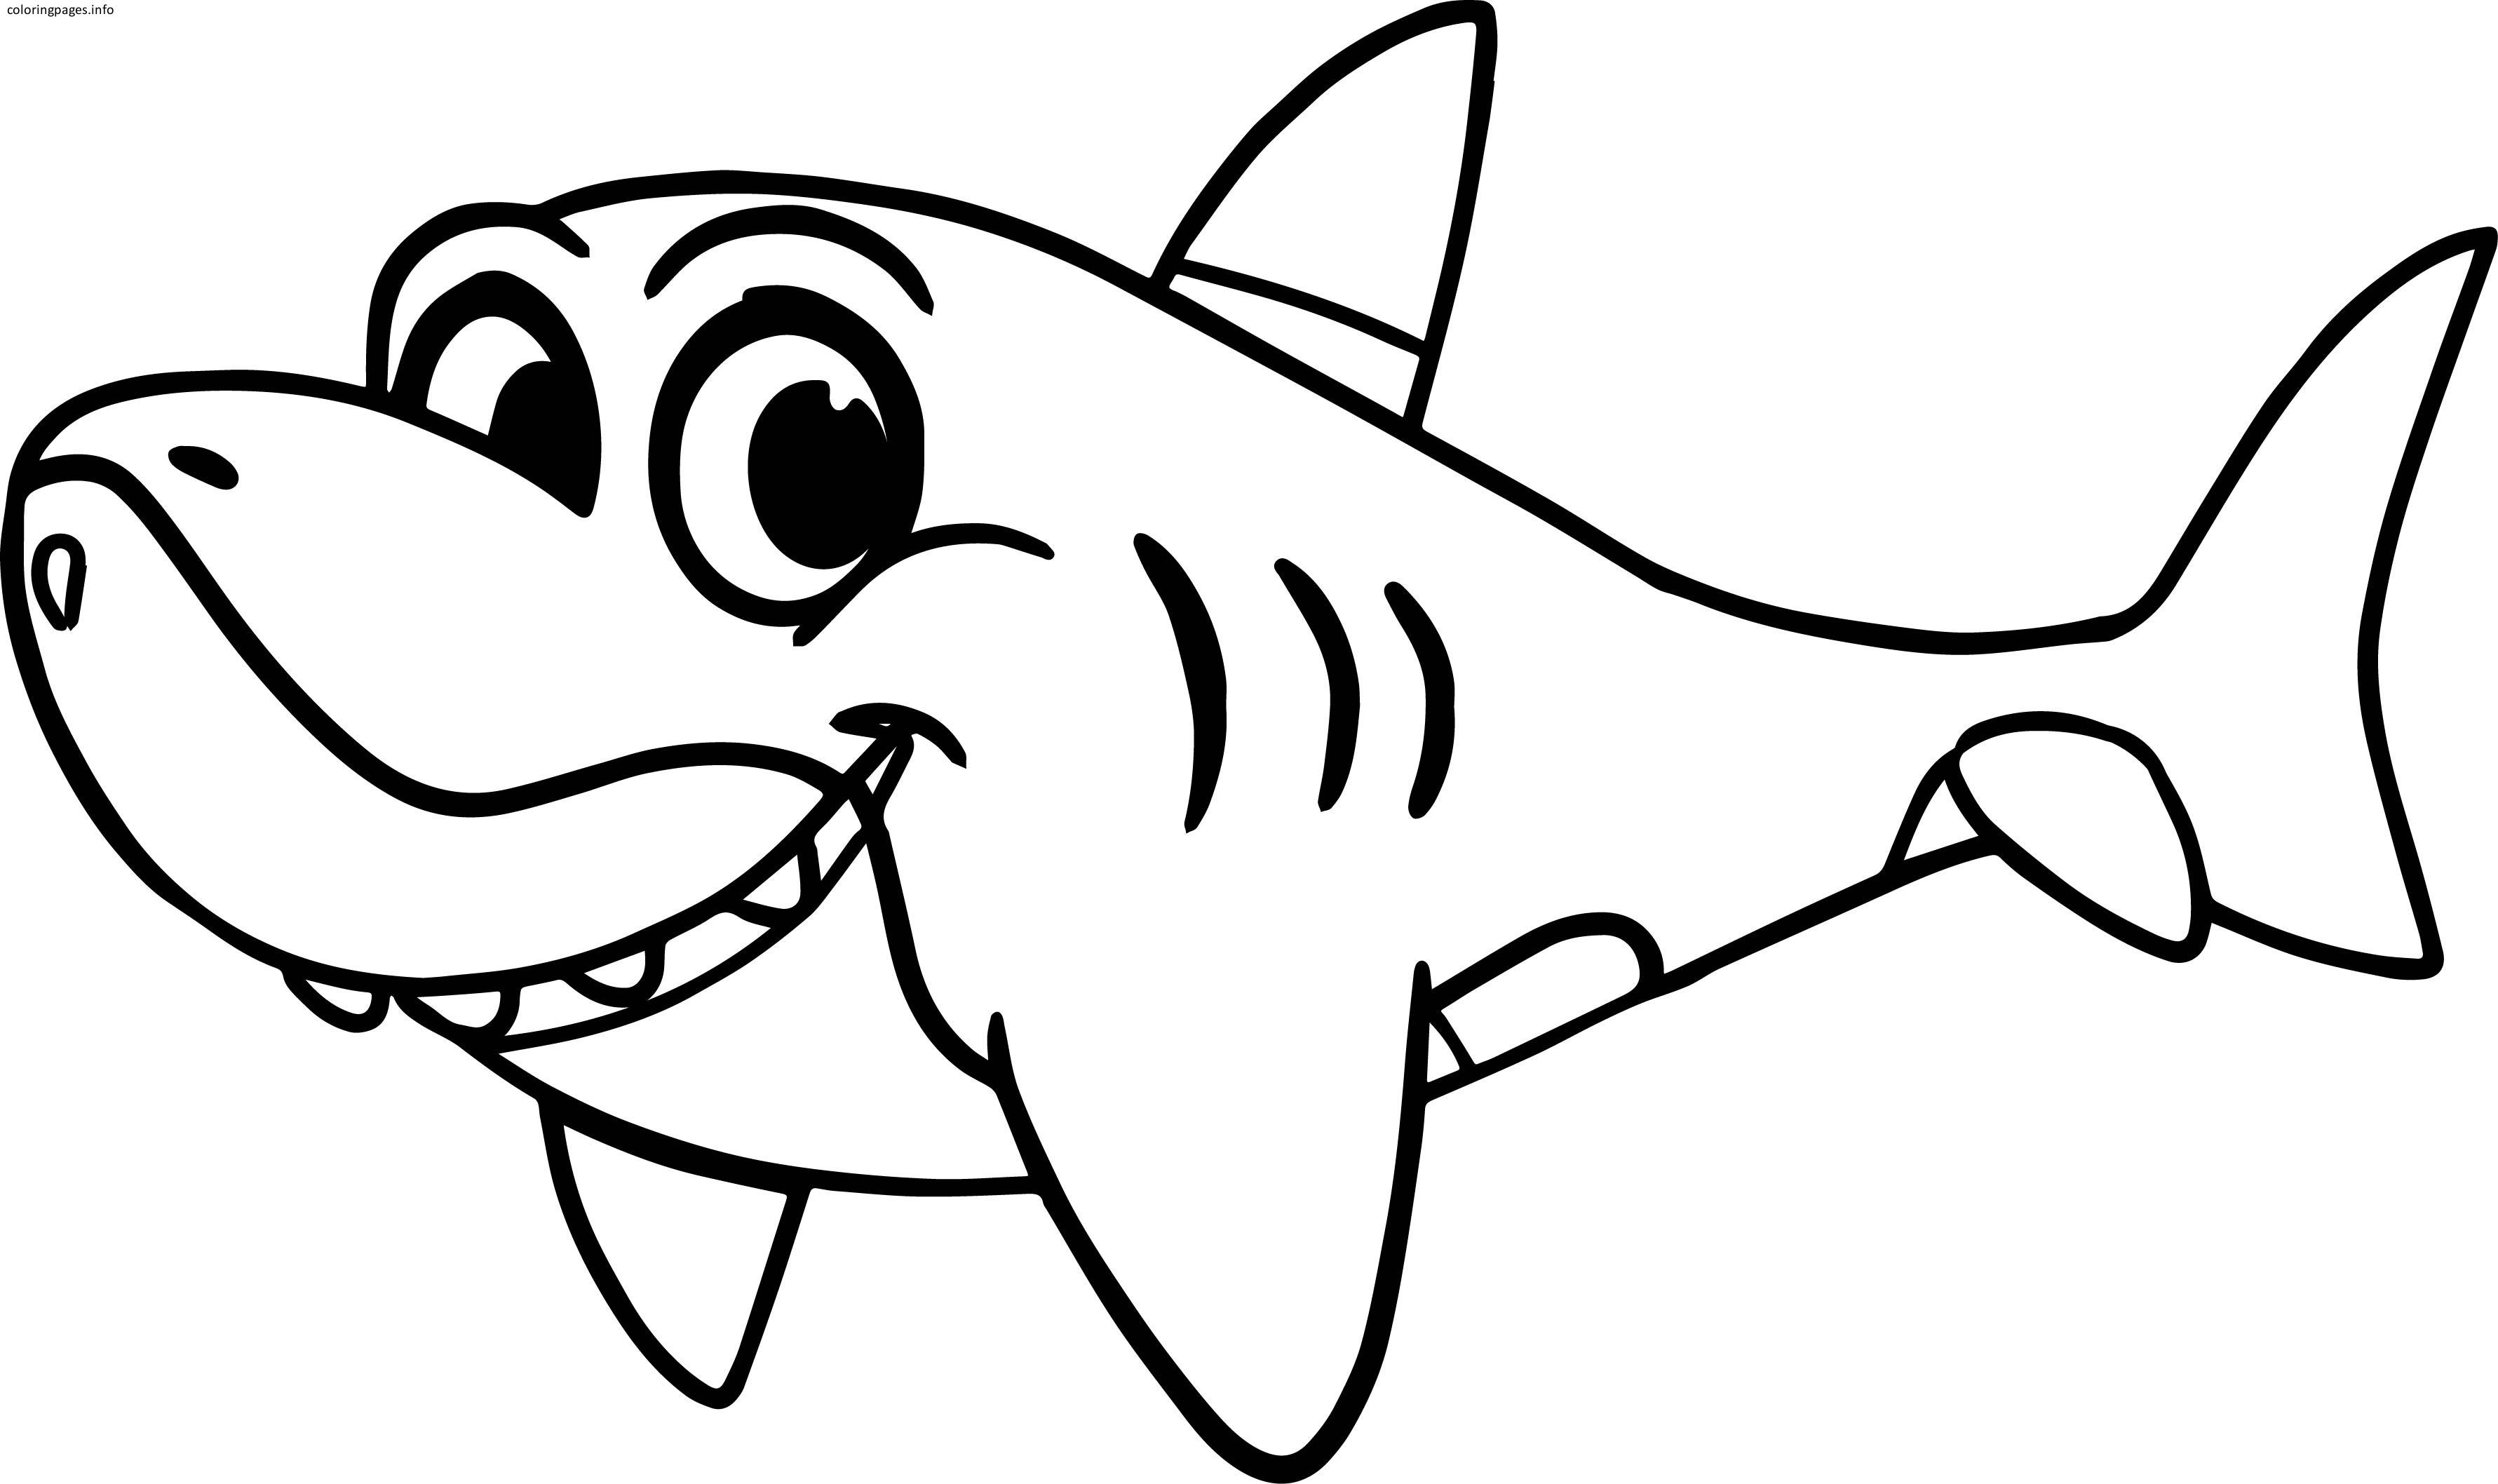 Cute Shark Drawing